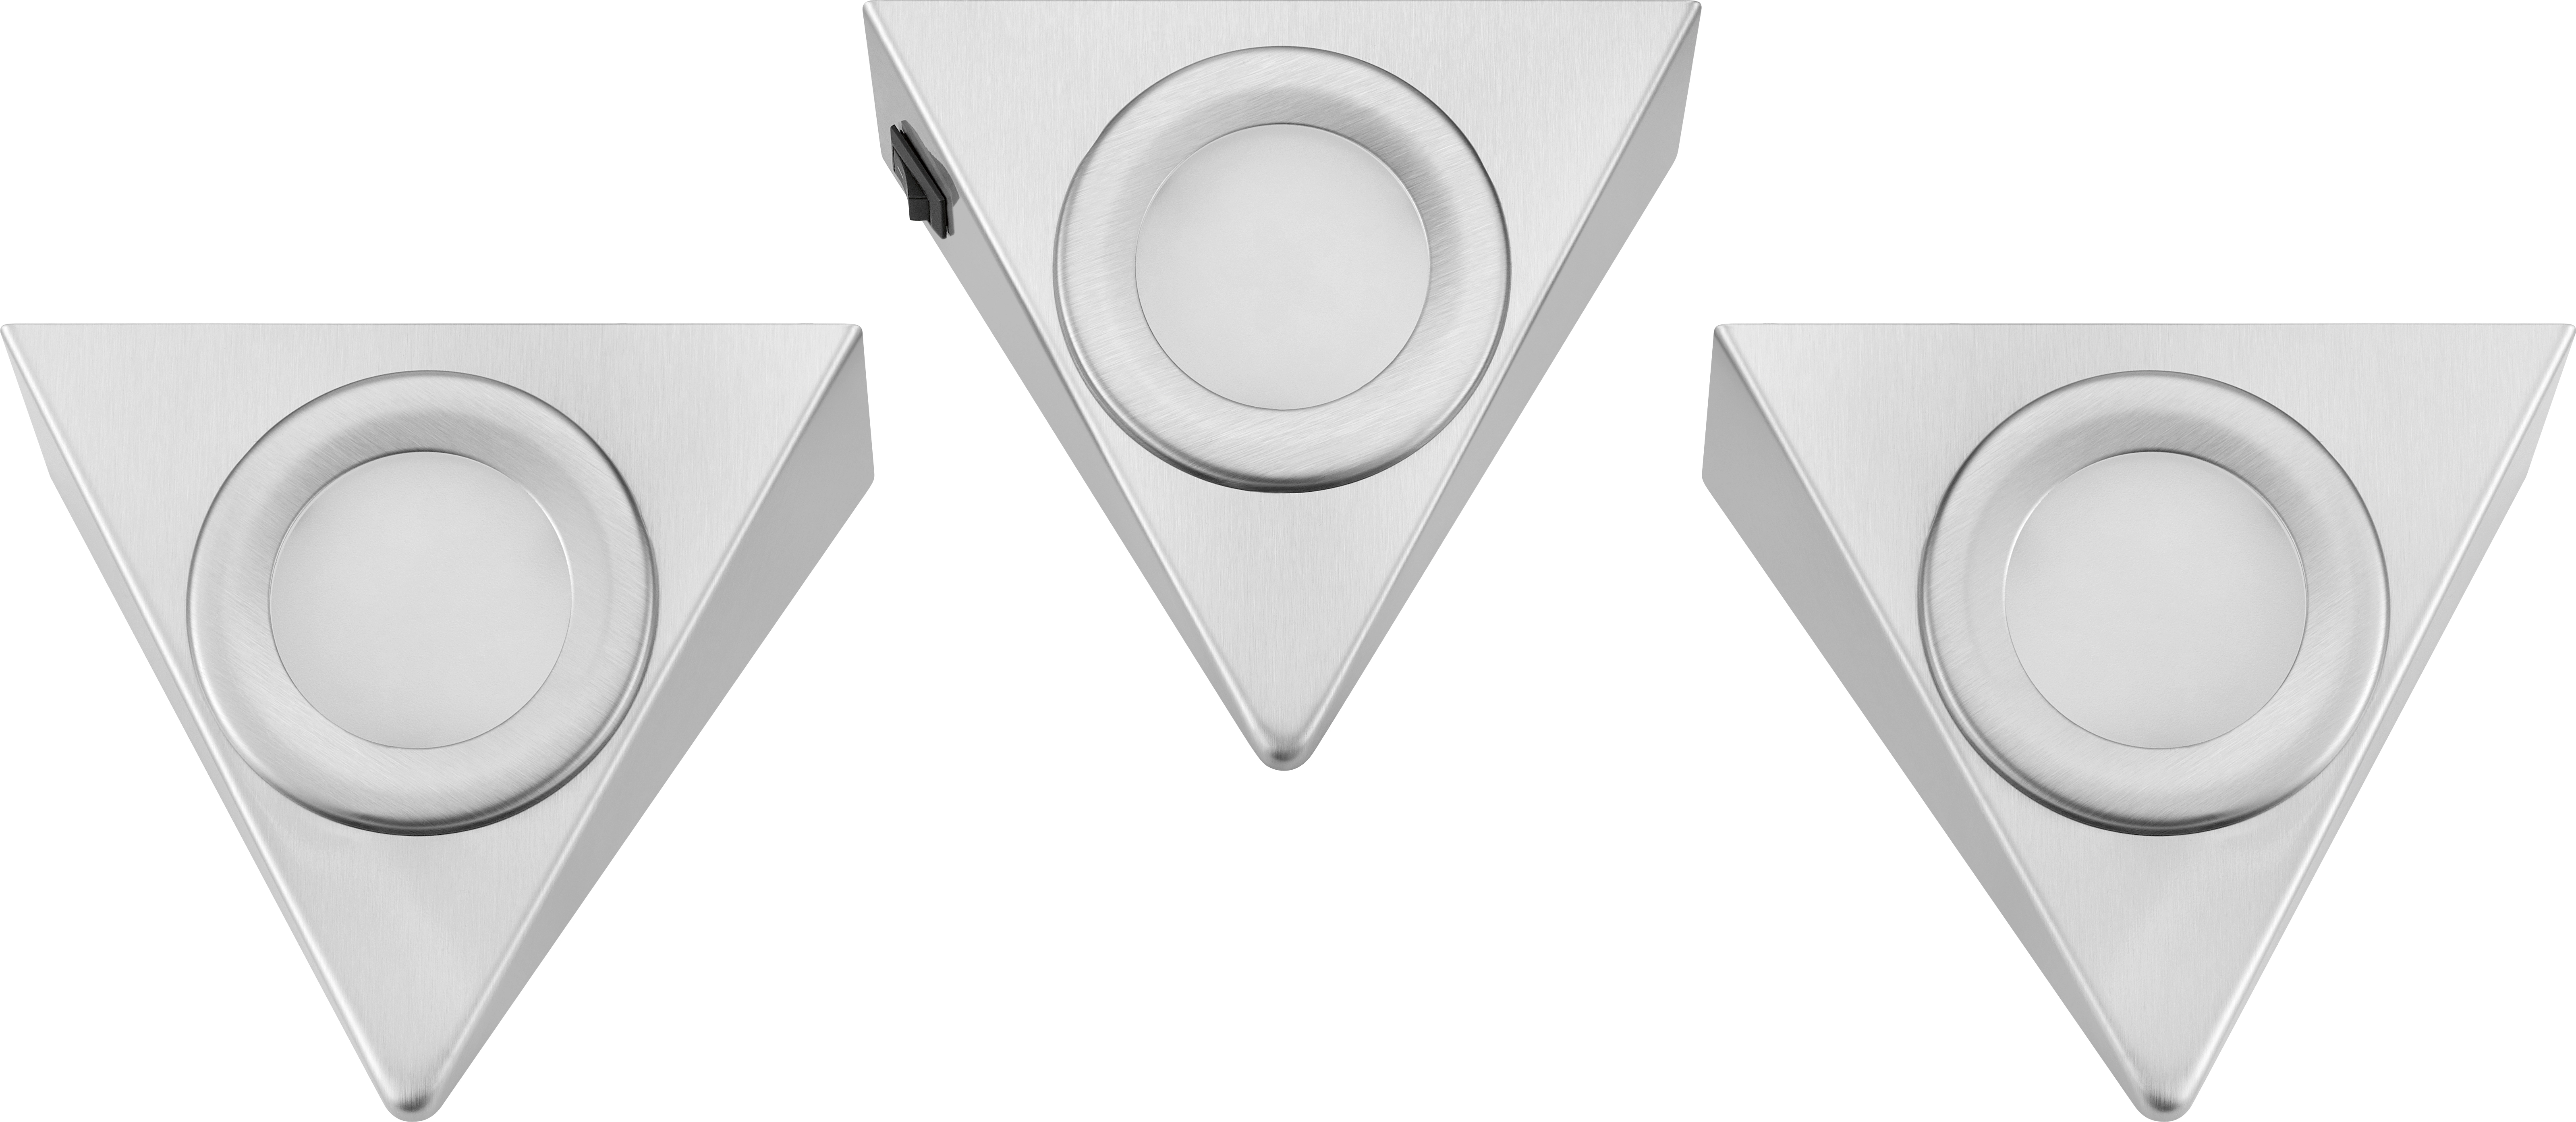 W Silber bei OBI EEK: 3 3er-Set LED-Unterbauleuchte Dreieck kaufen G